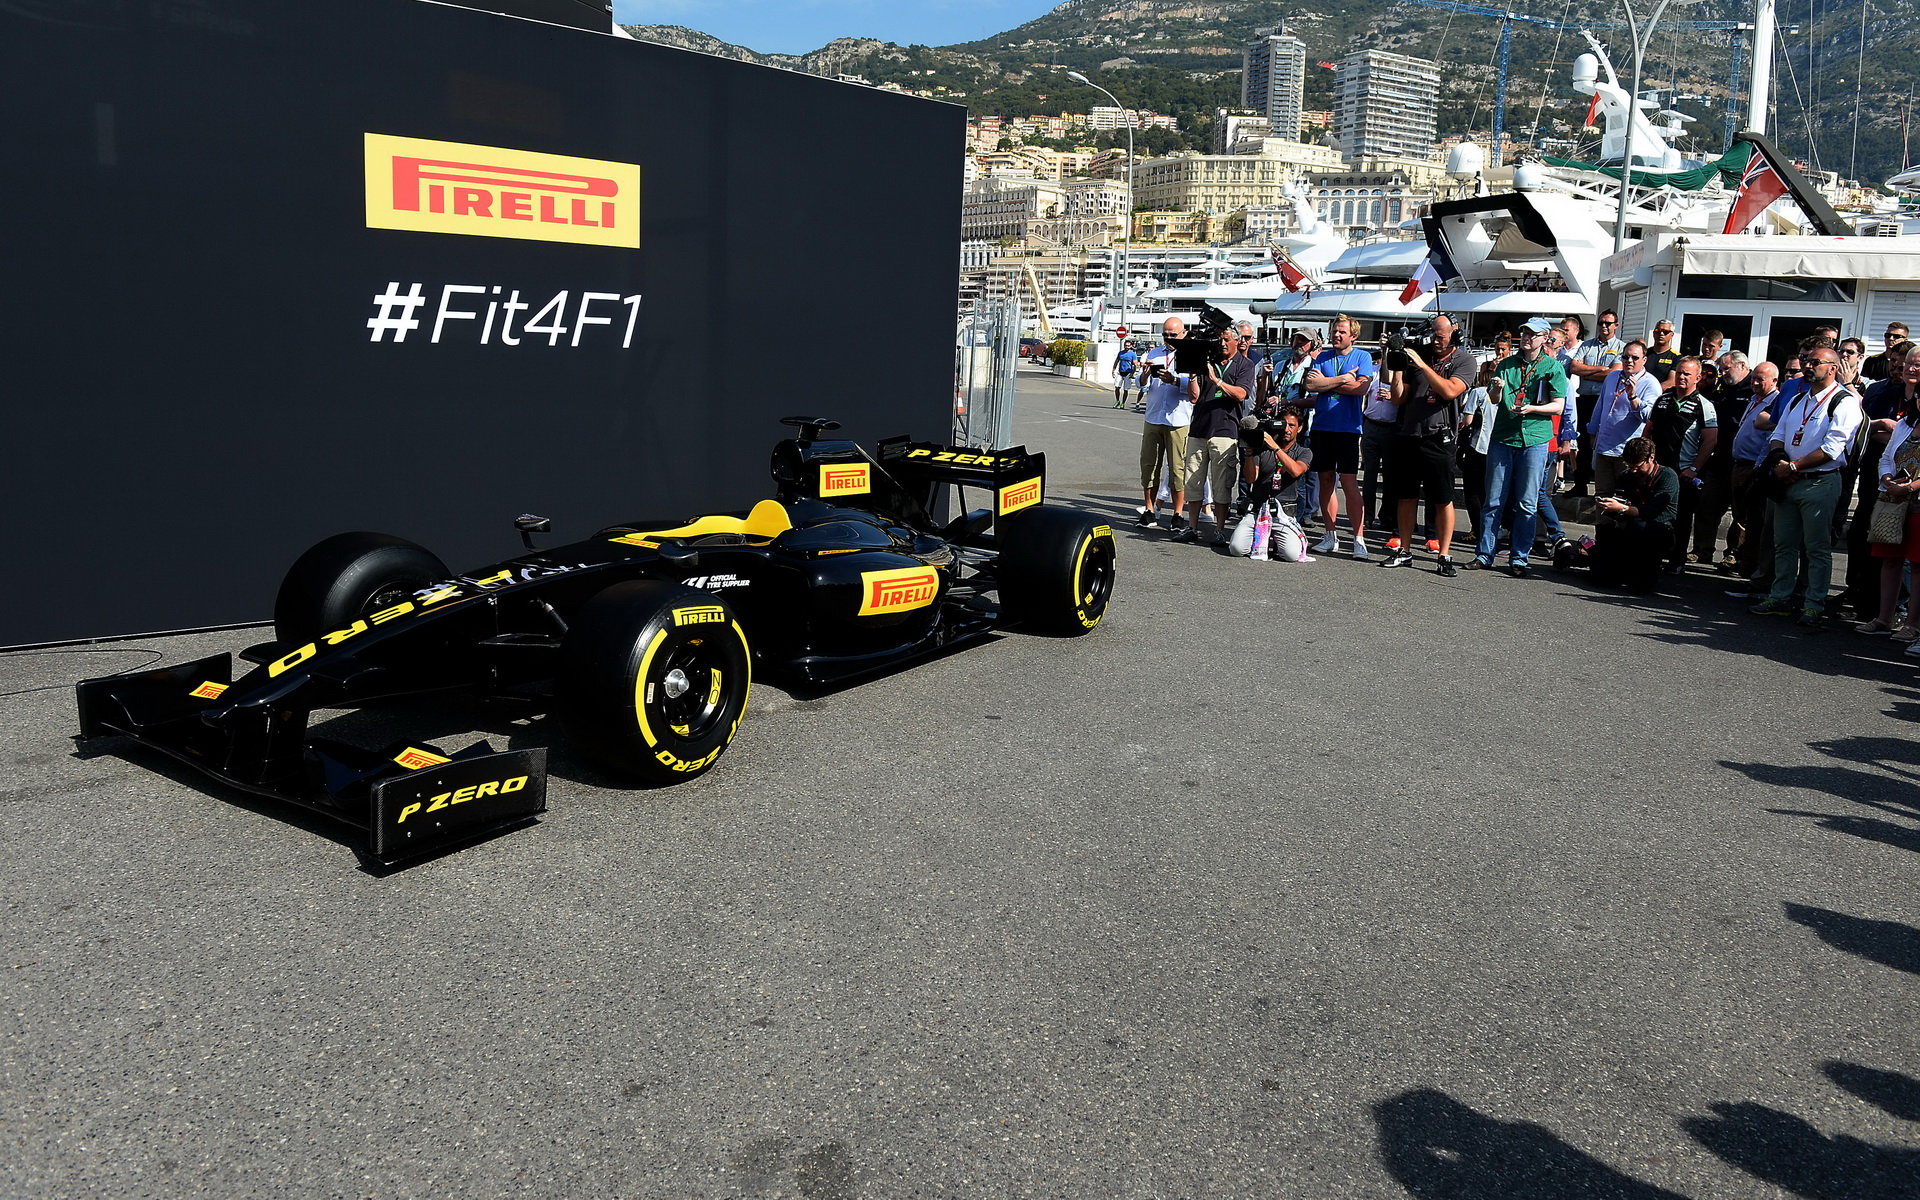 Pirelli představuje pneumatiky pro rok 2017 v Monaku